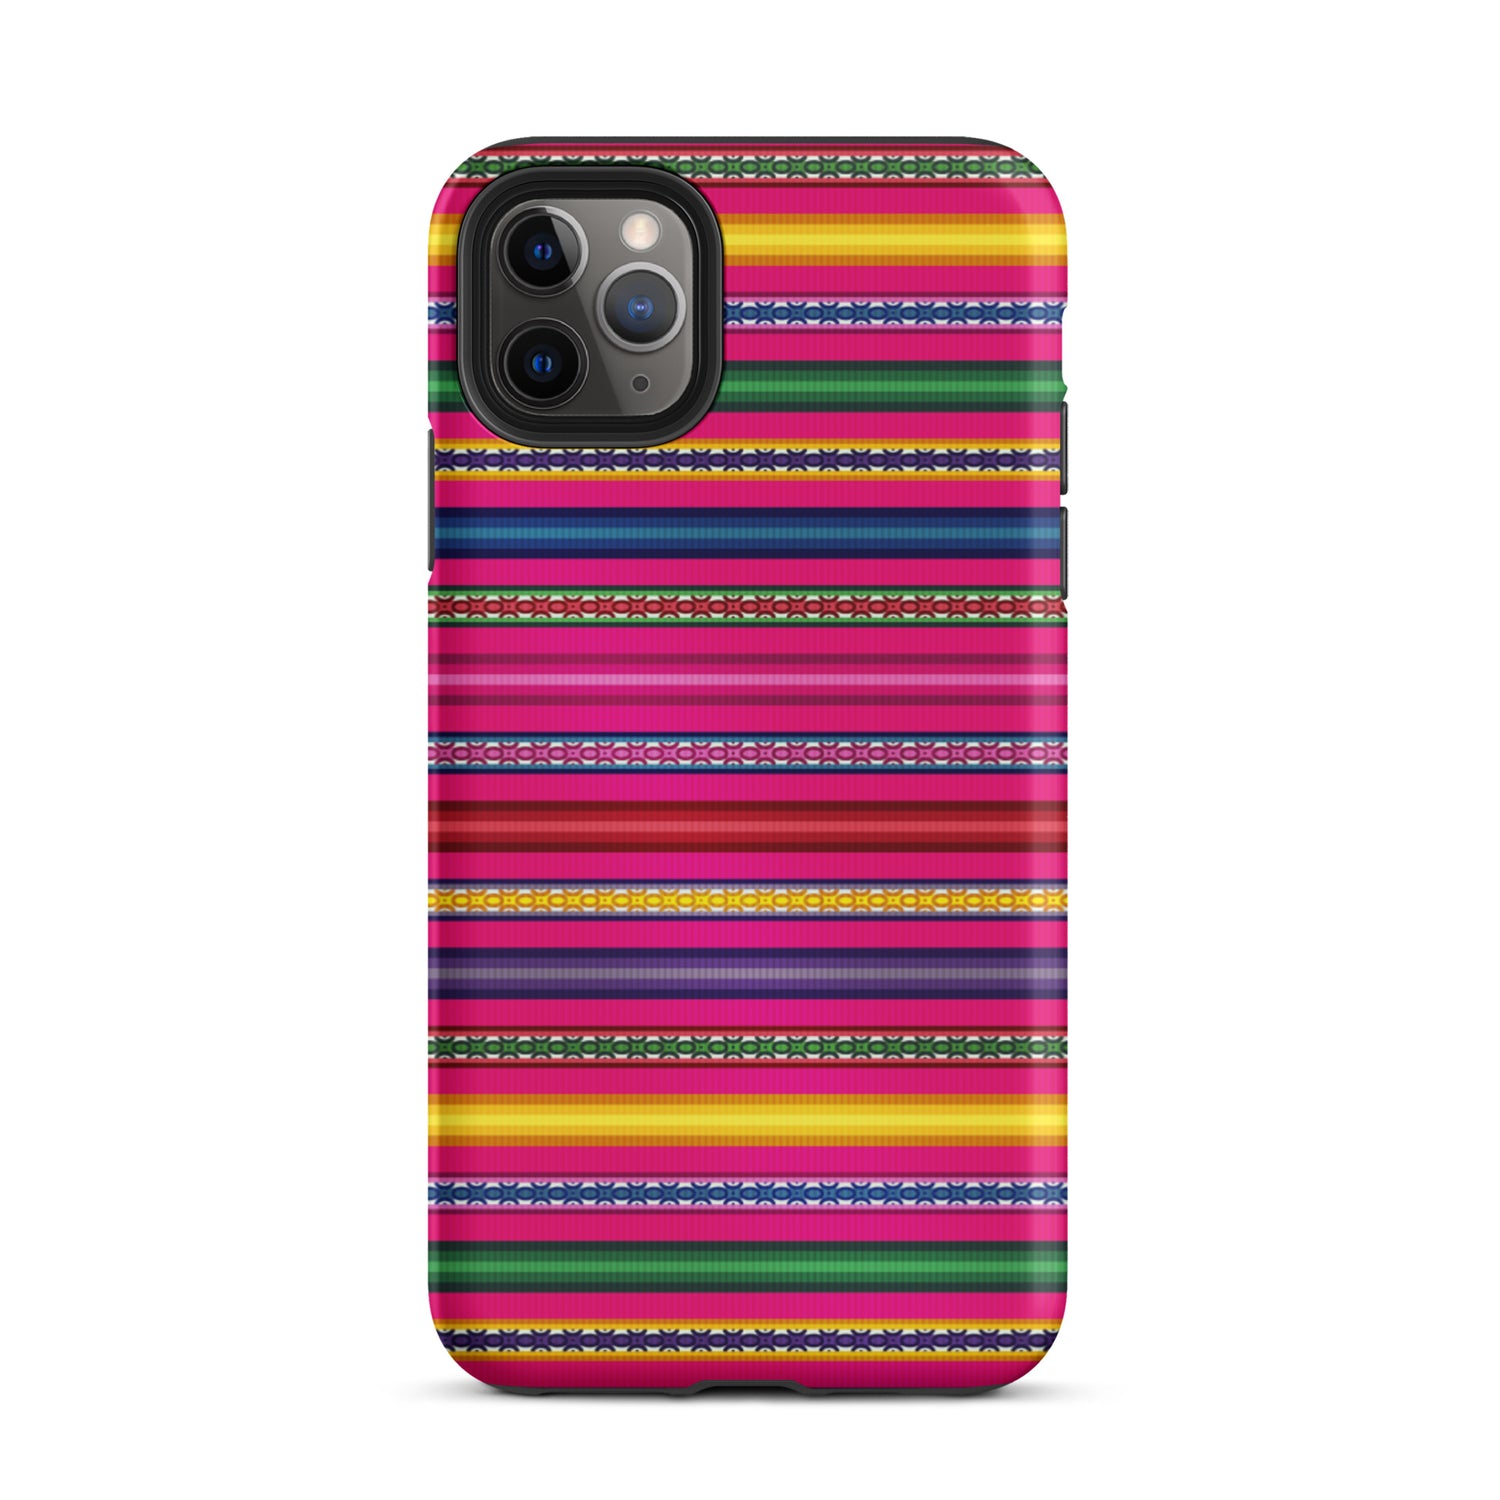 Peruvian Tough iPhone 11 Pro Max case